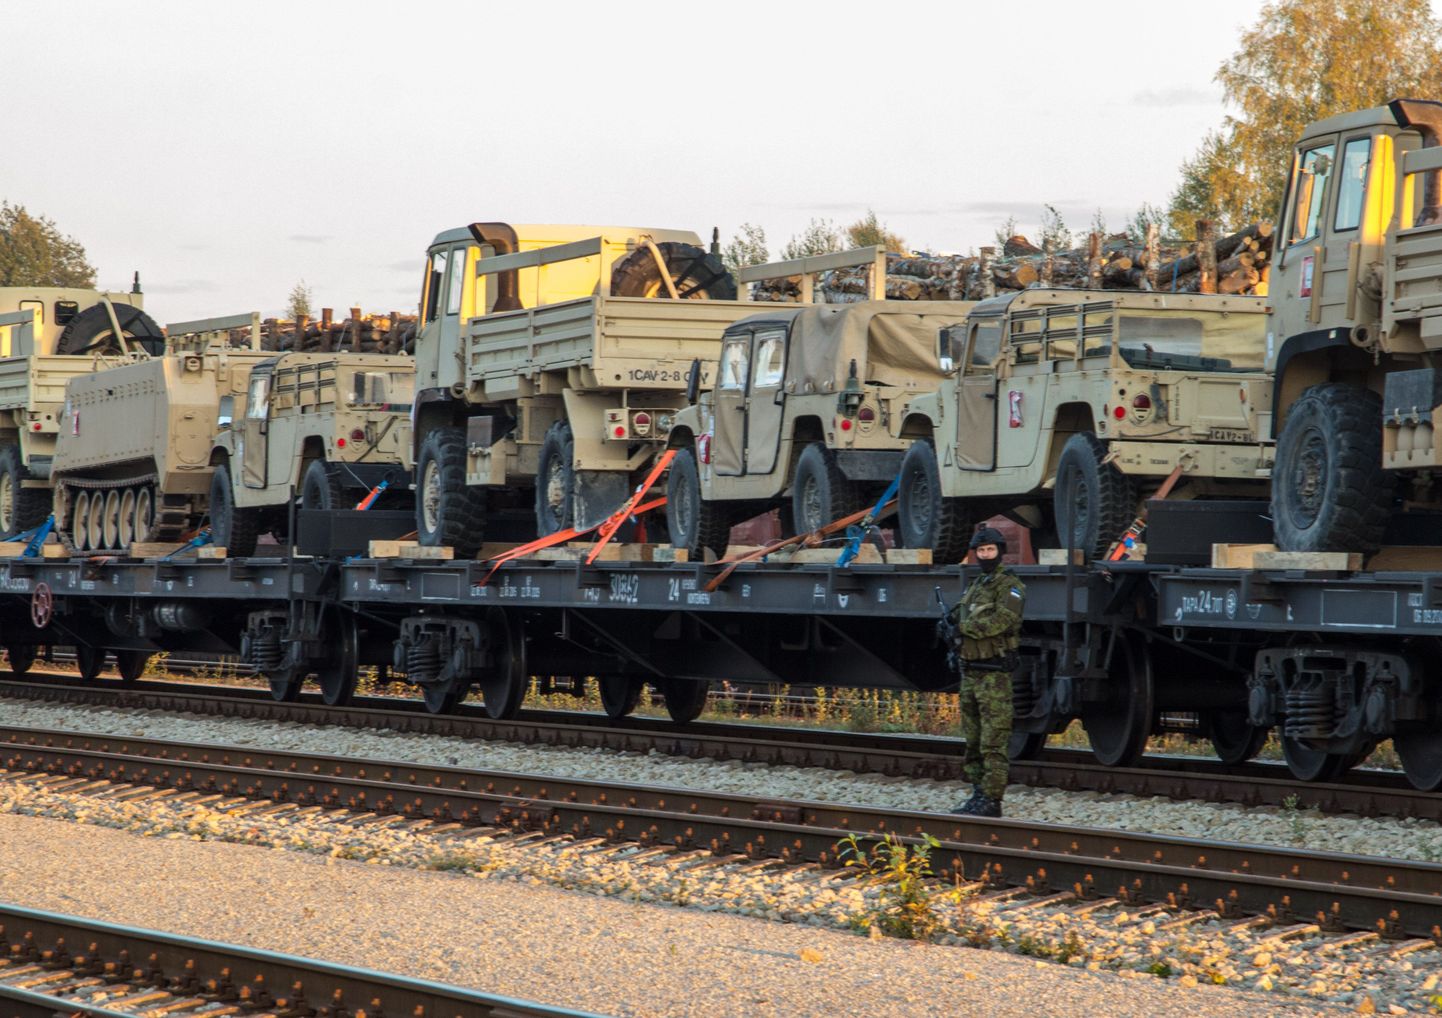 Kahepäevane lahingmasinate transpordi raudteeoperatsioon oli Eesti kaitseväele paras katsumus. Siiski saadi ülesandega edukalt hakkama ja kogu varustus jõudis edukalt Tapale.